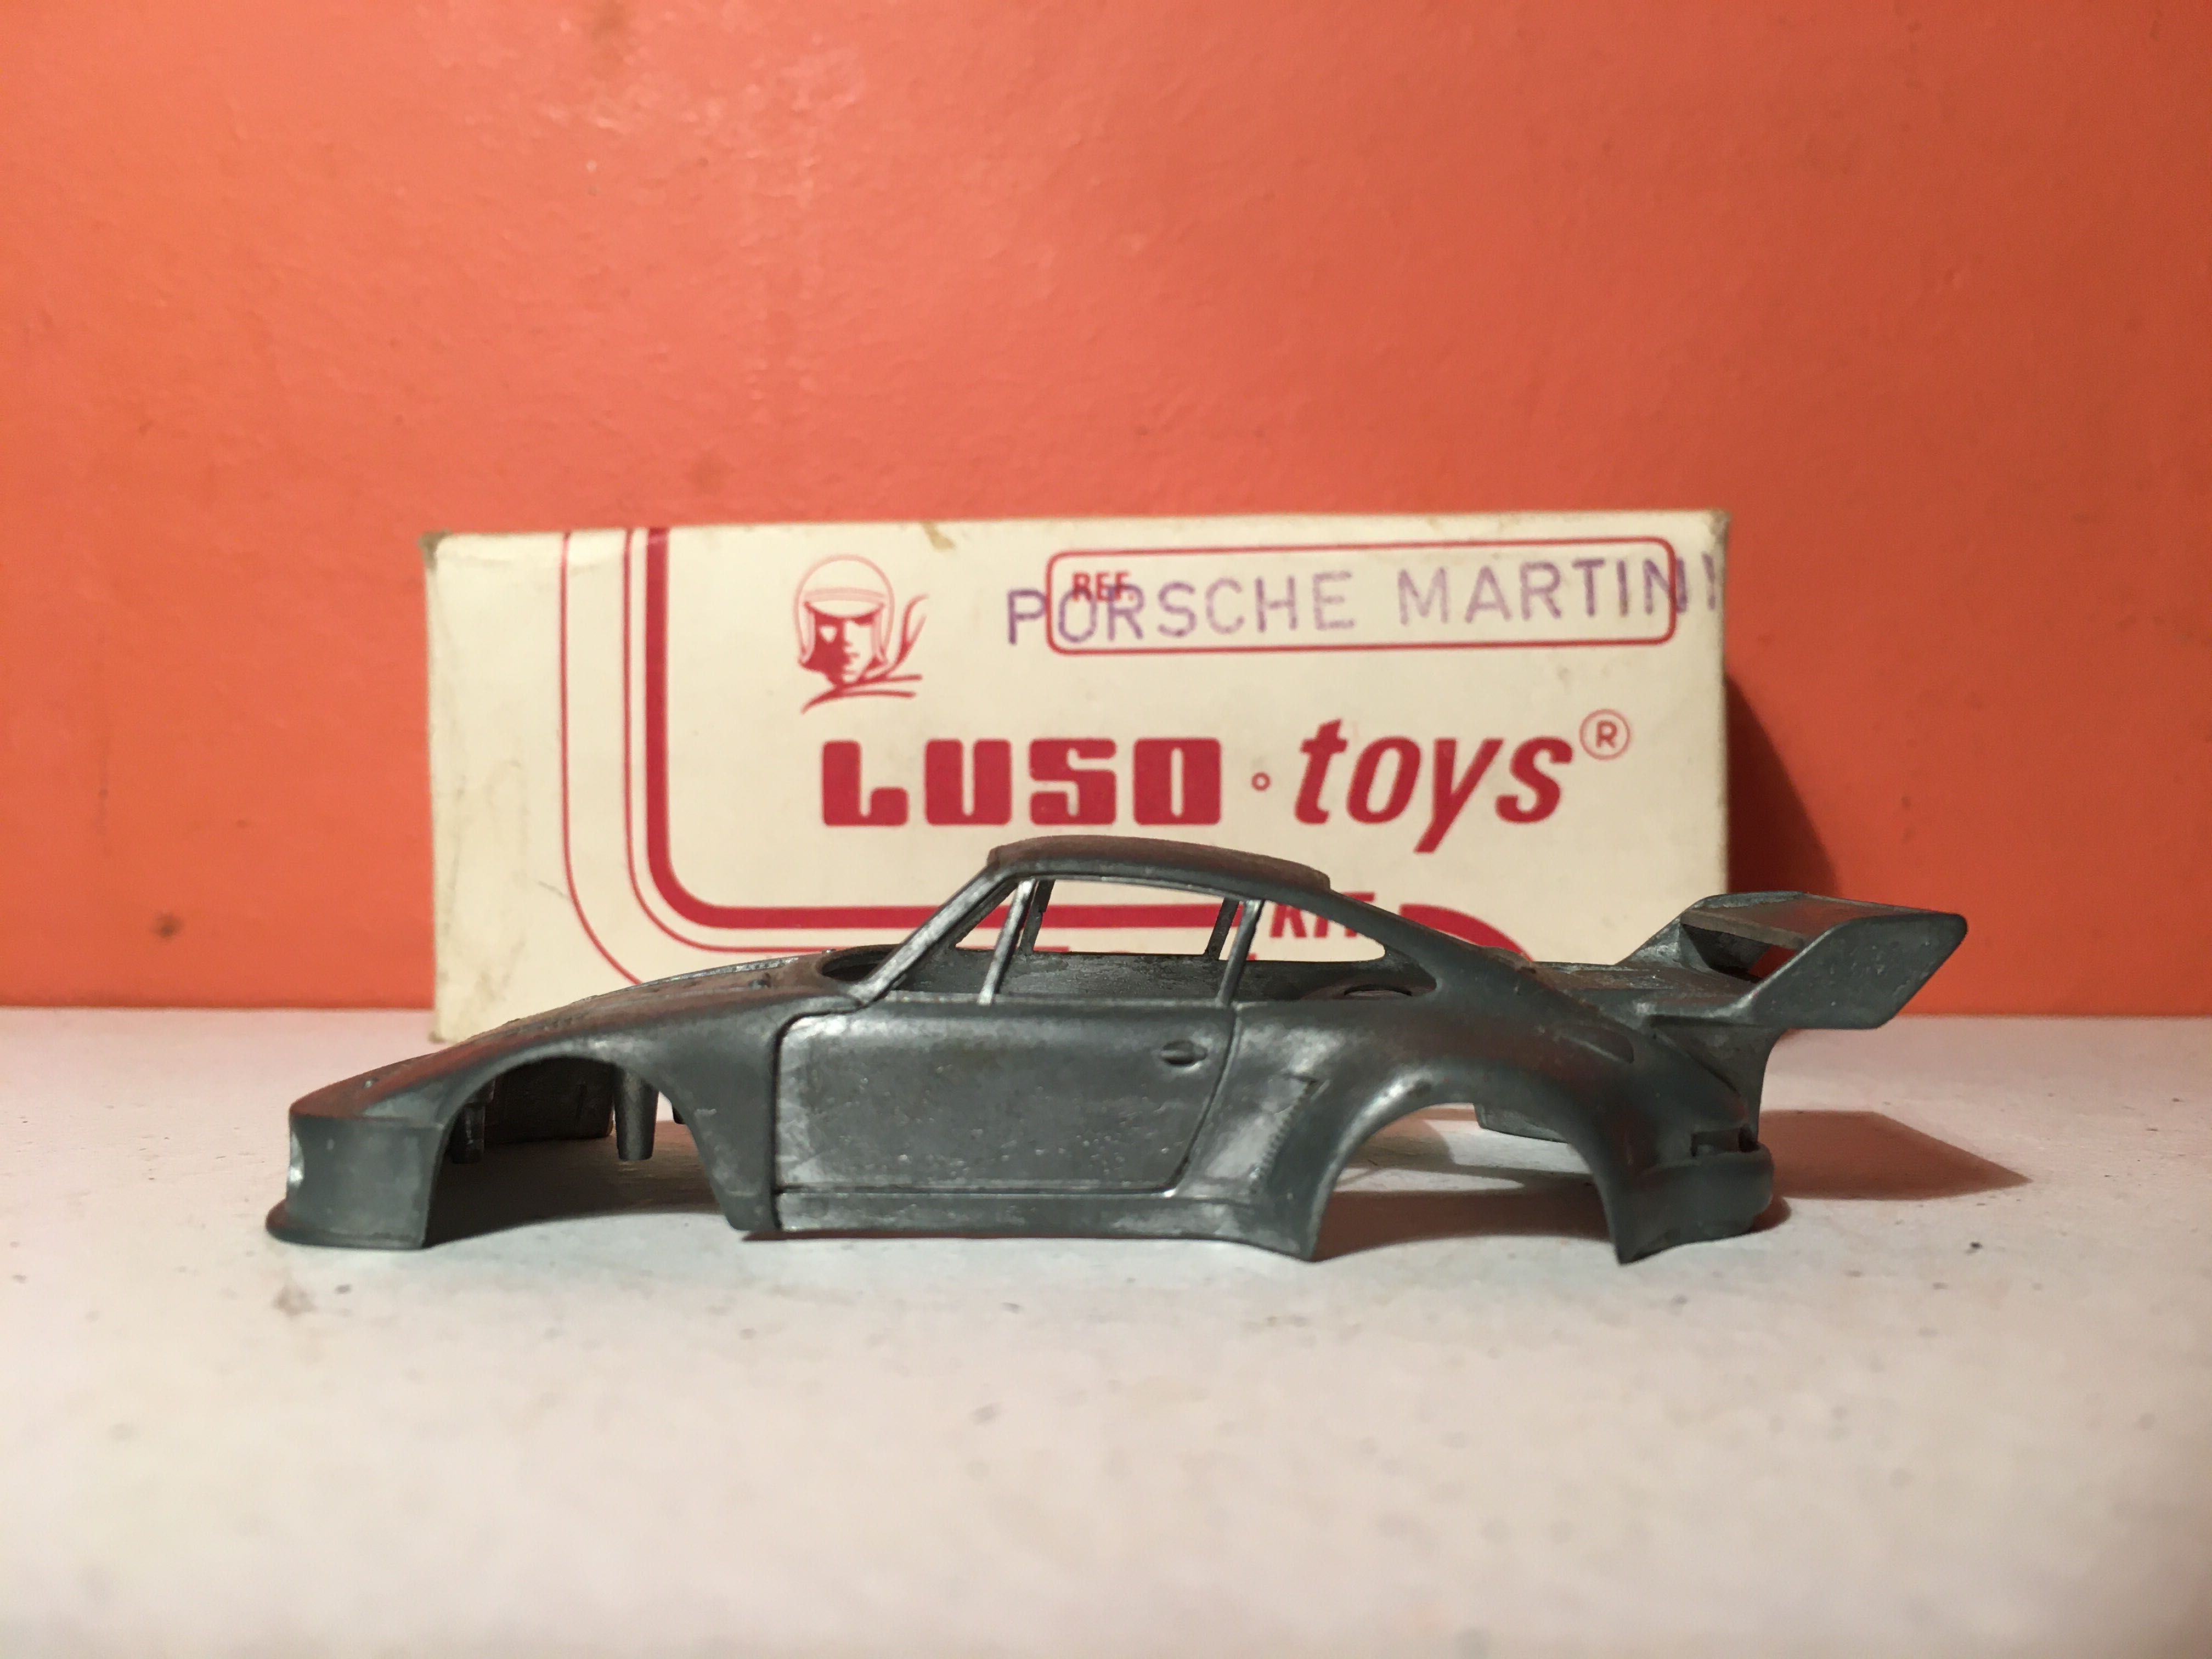 PORSCHE 935 MARTINI - luso toys kit series - escala 1/43